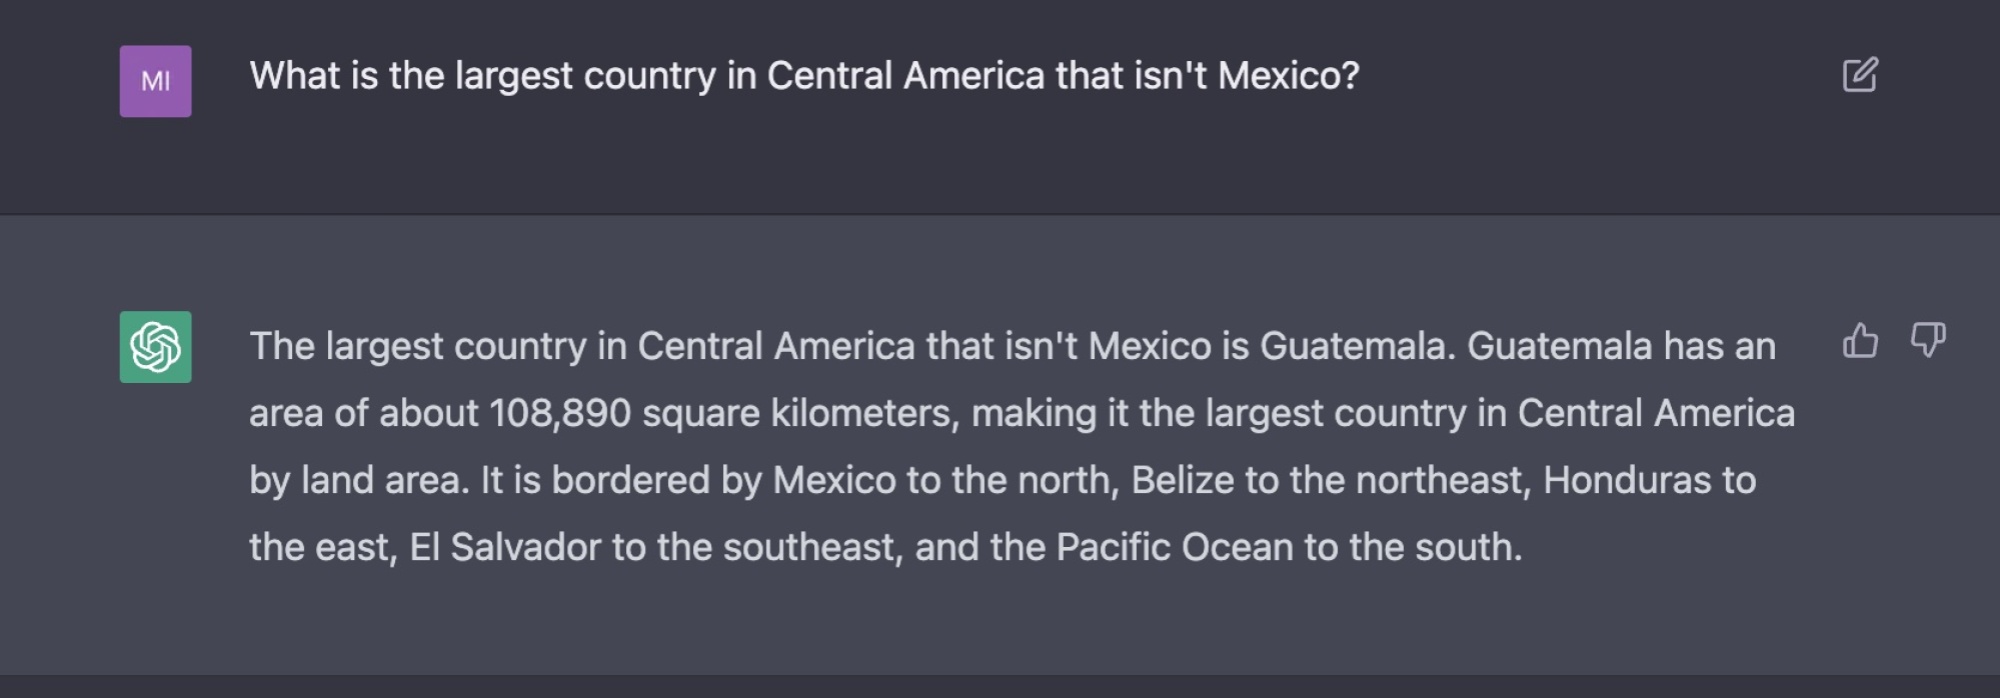 on pose à un chatbot une question géographique complexe à laquelle la bonne réponse est le Honduras, et il dit que la réponse est le Guatemala